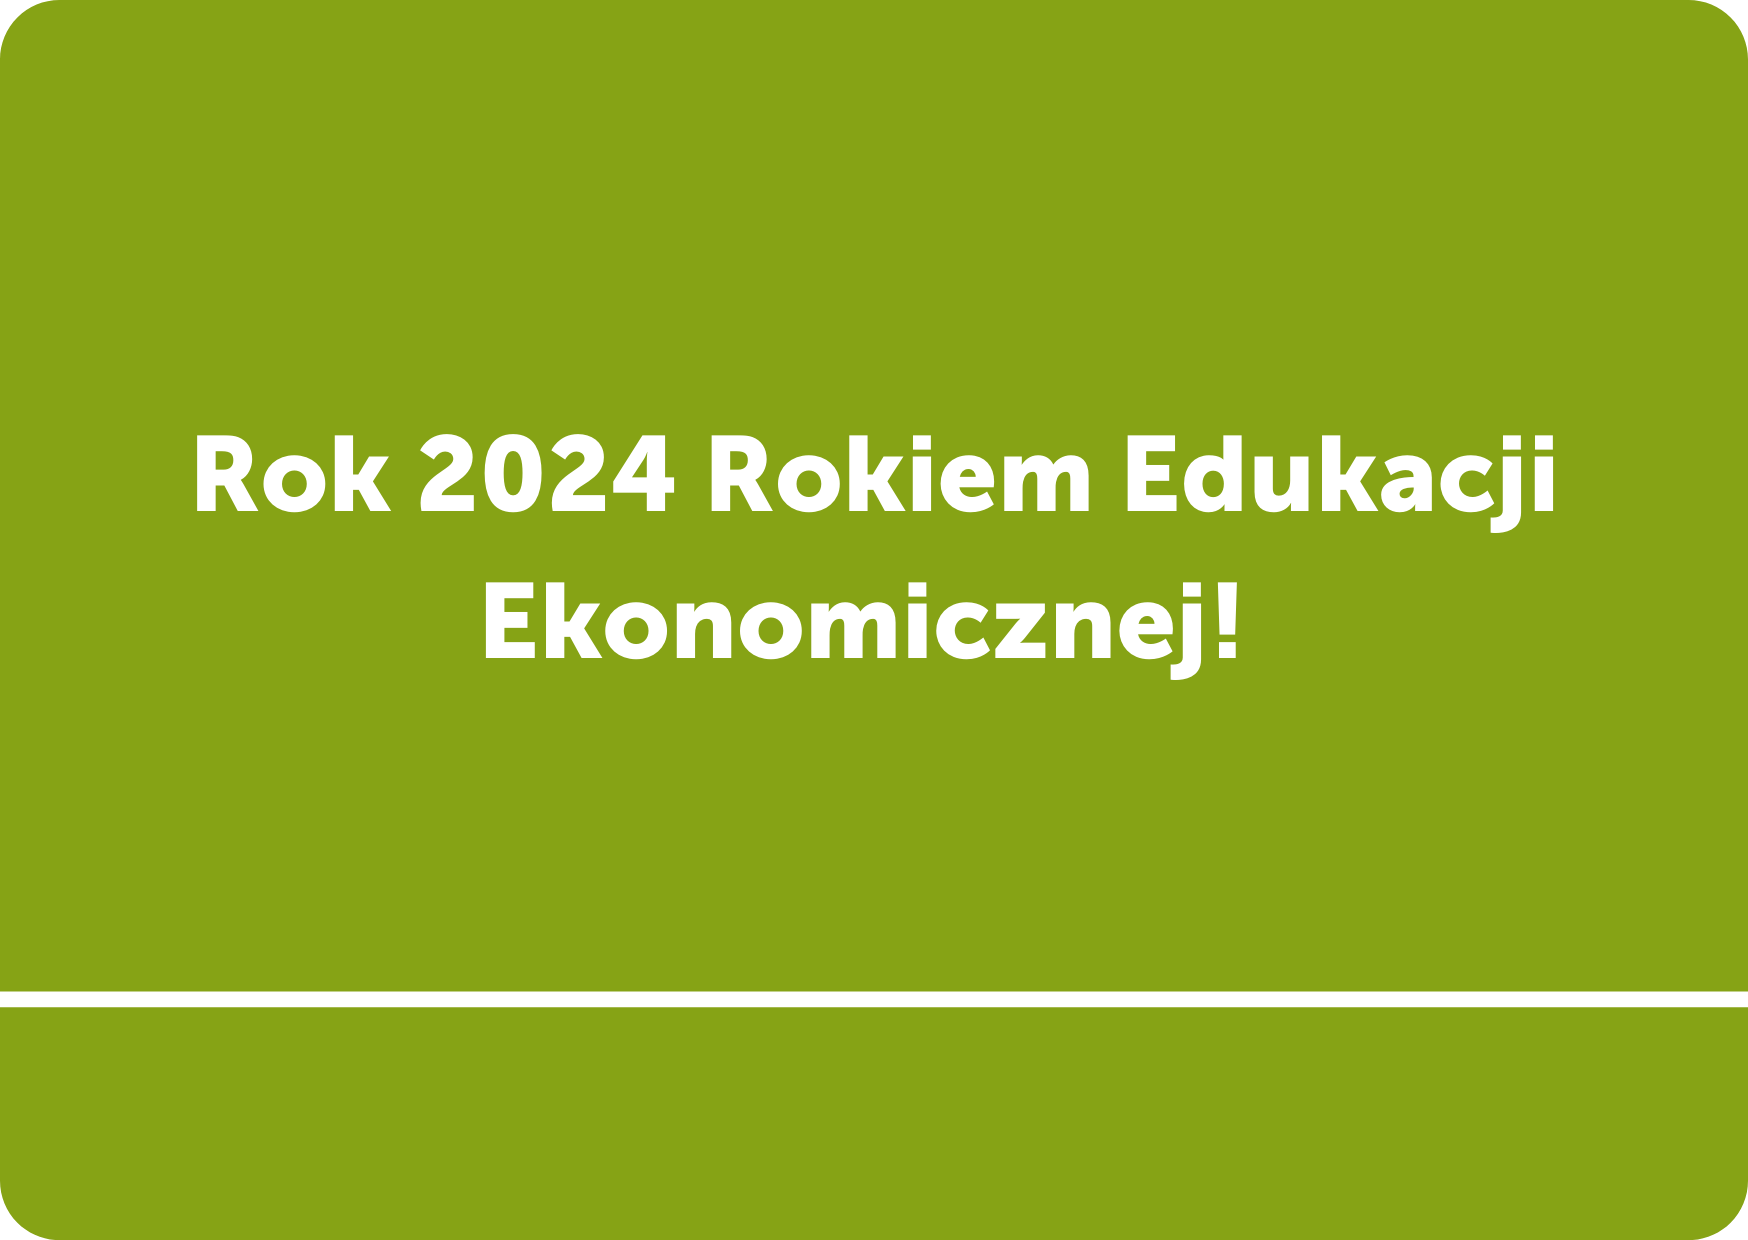 Rok 2024 Rokiem Edukacji Ekonomicznej! Związek Harcerstwa Polskiego